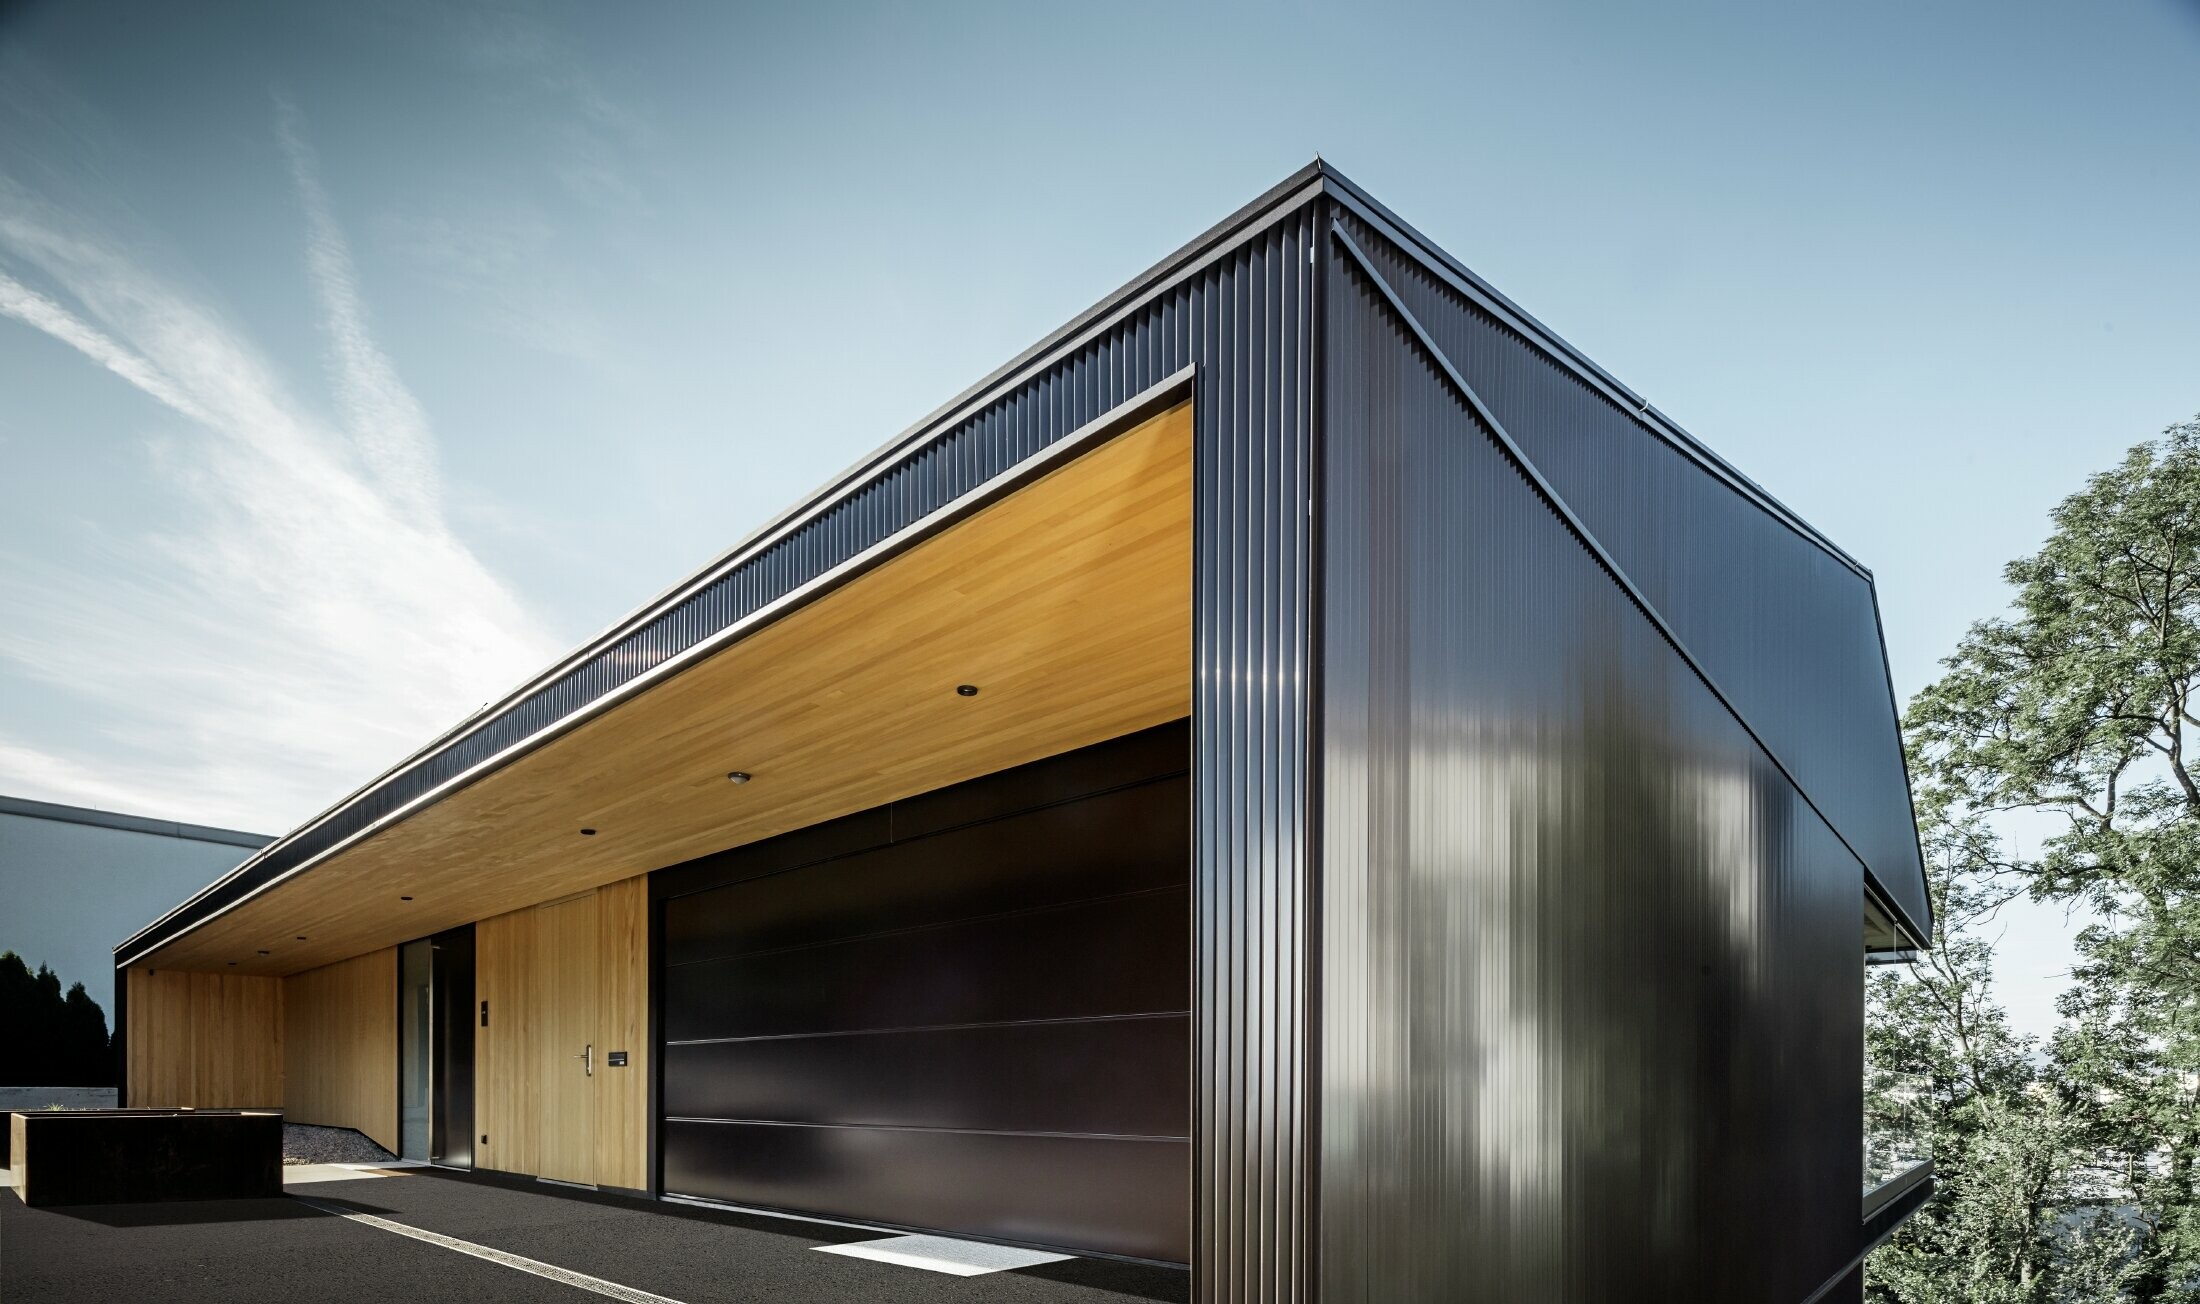 Garageindkørsel til et enfamilieshus, hvor facaden er beklædt med PREFAs takkede profil i mørkebrun. 